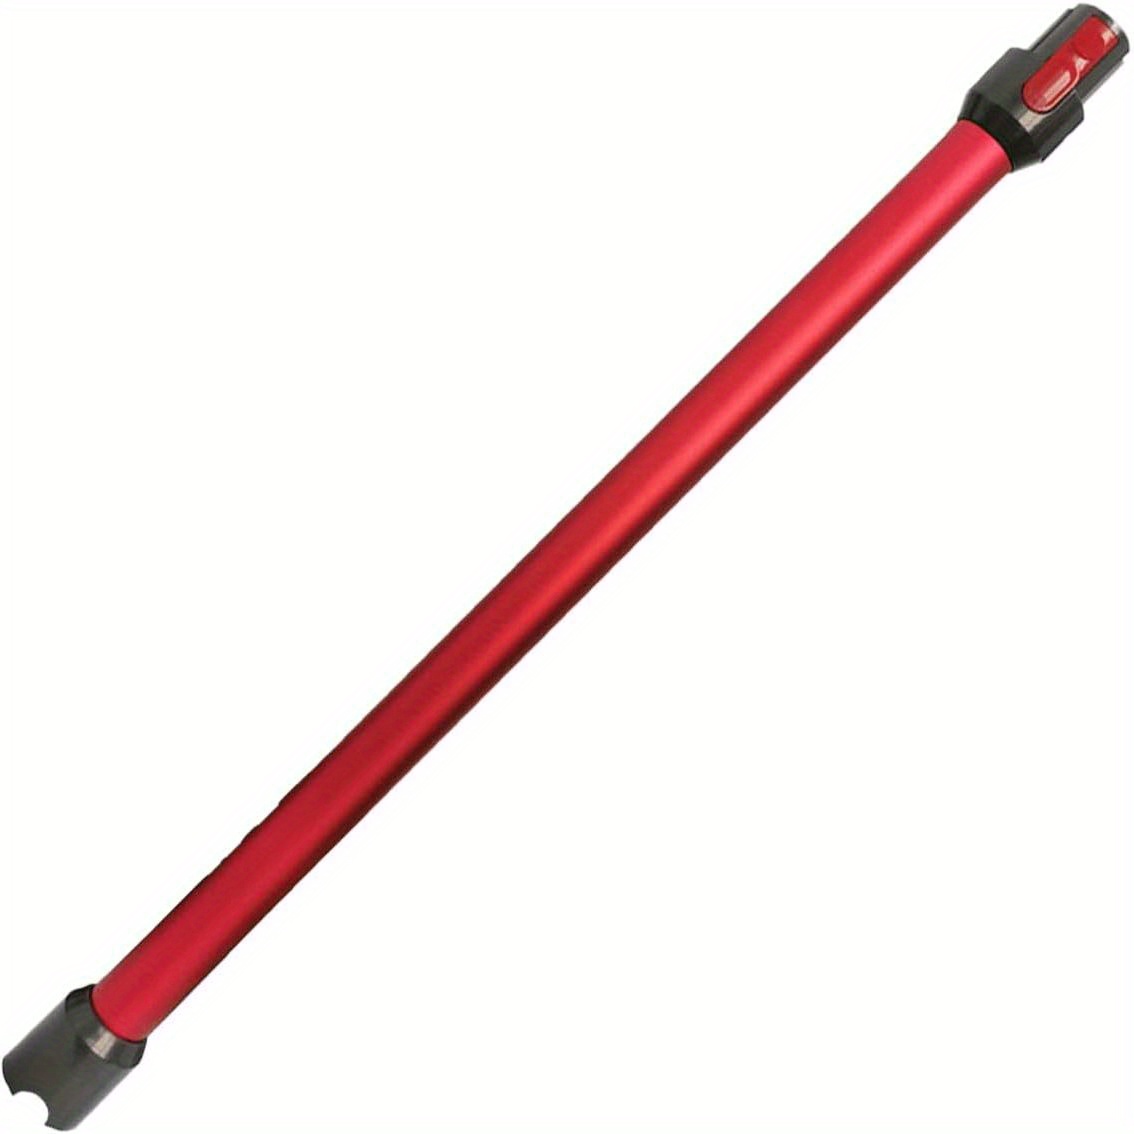 Rapid Red Cordless Stick Vacuum